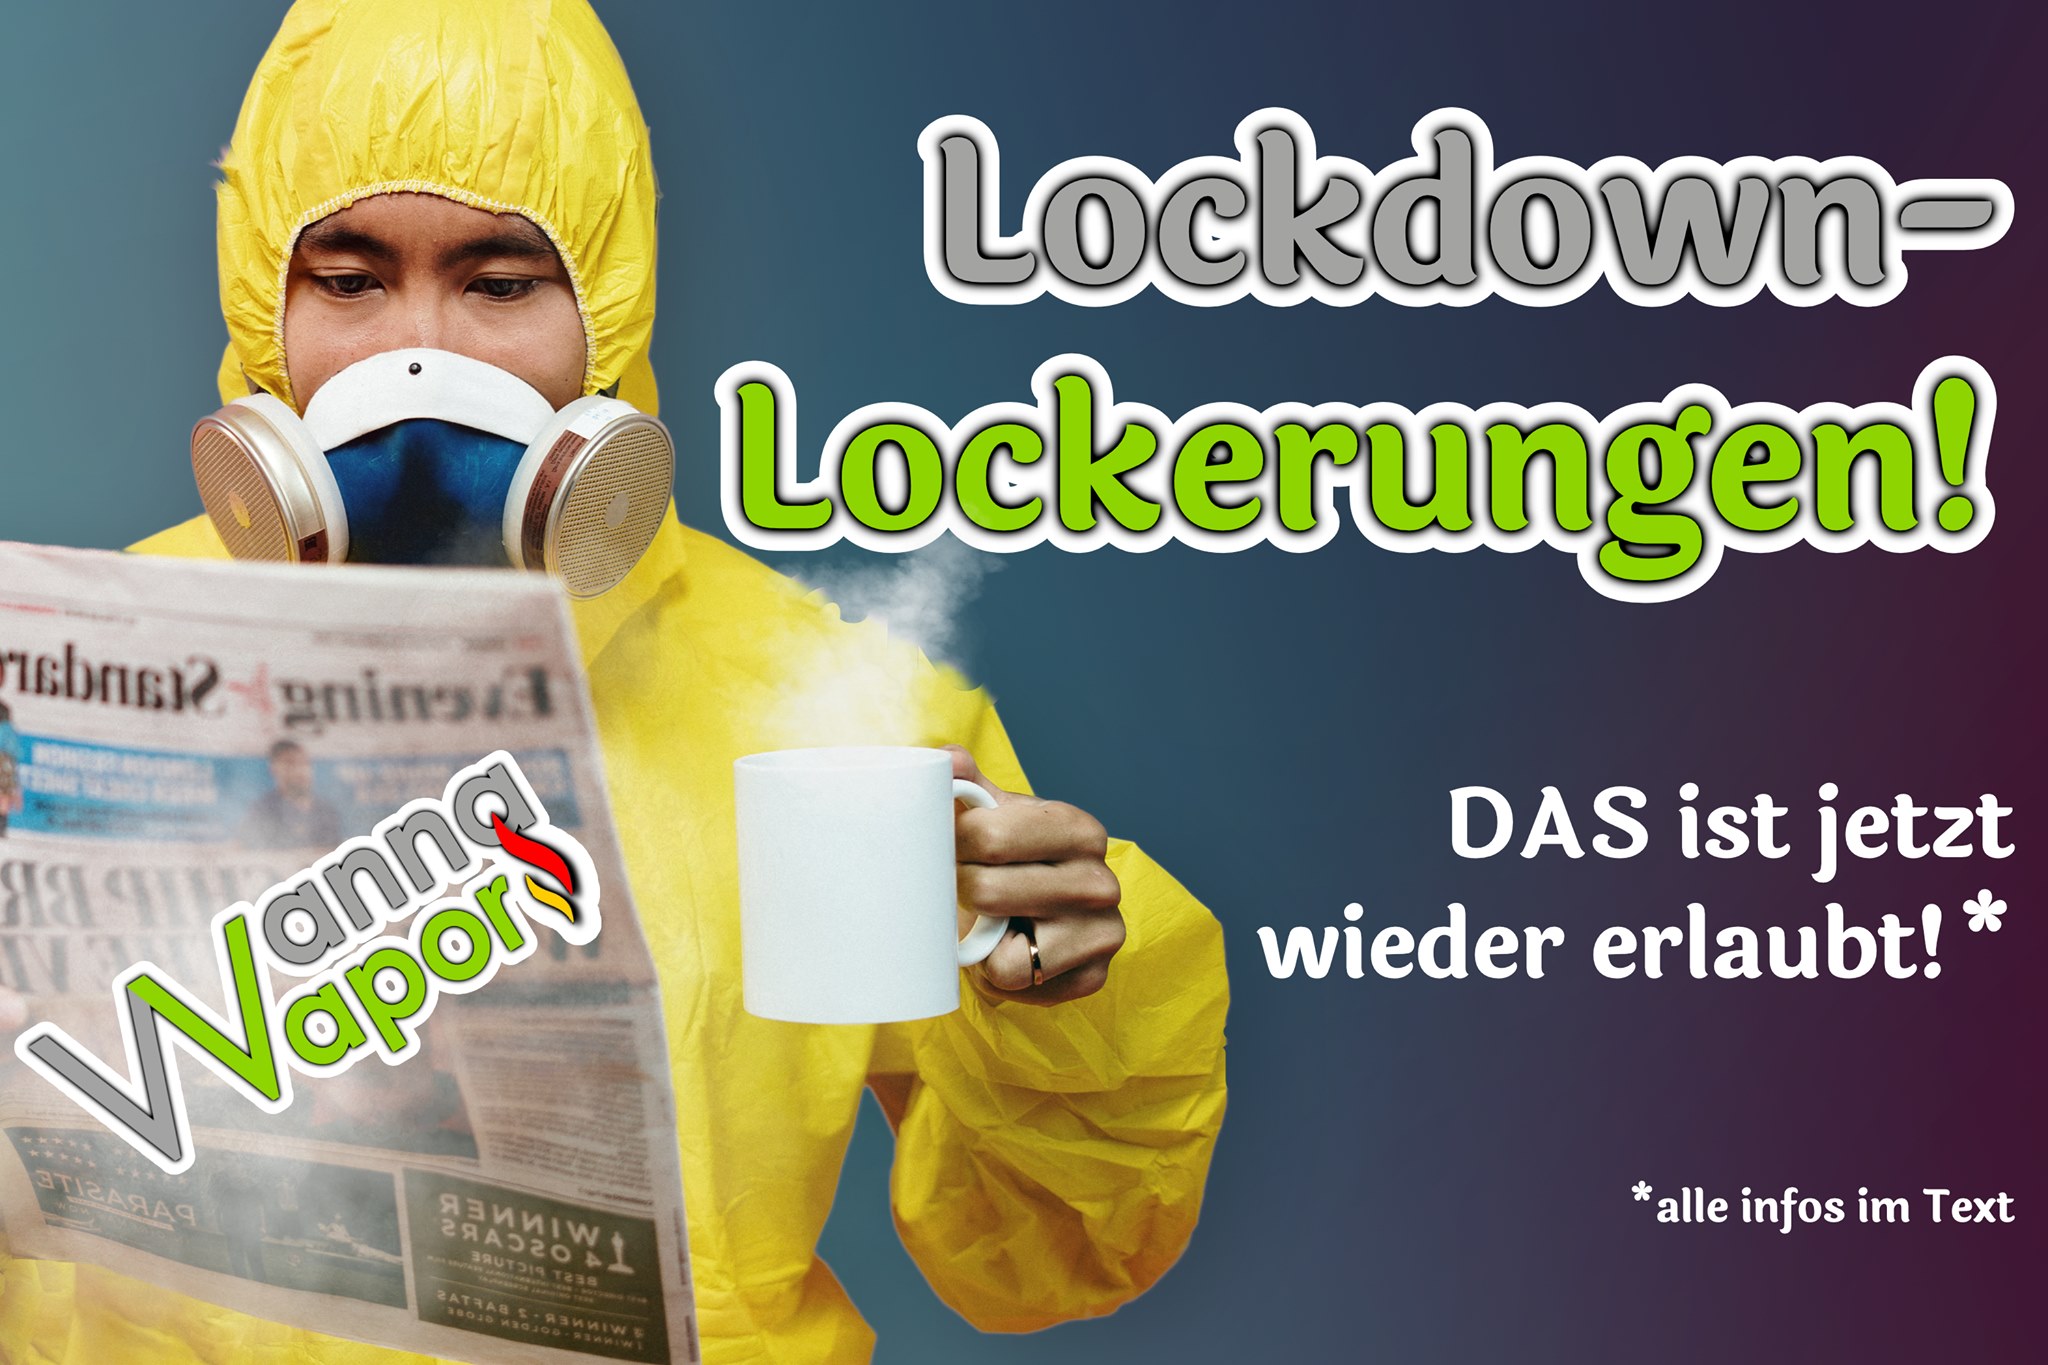 LockdownLockerung